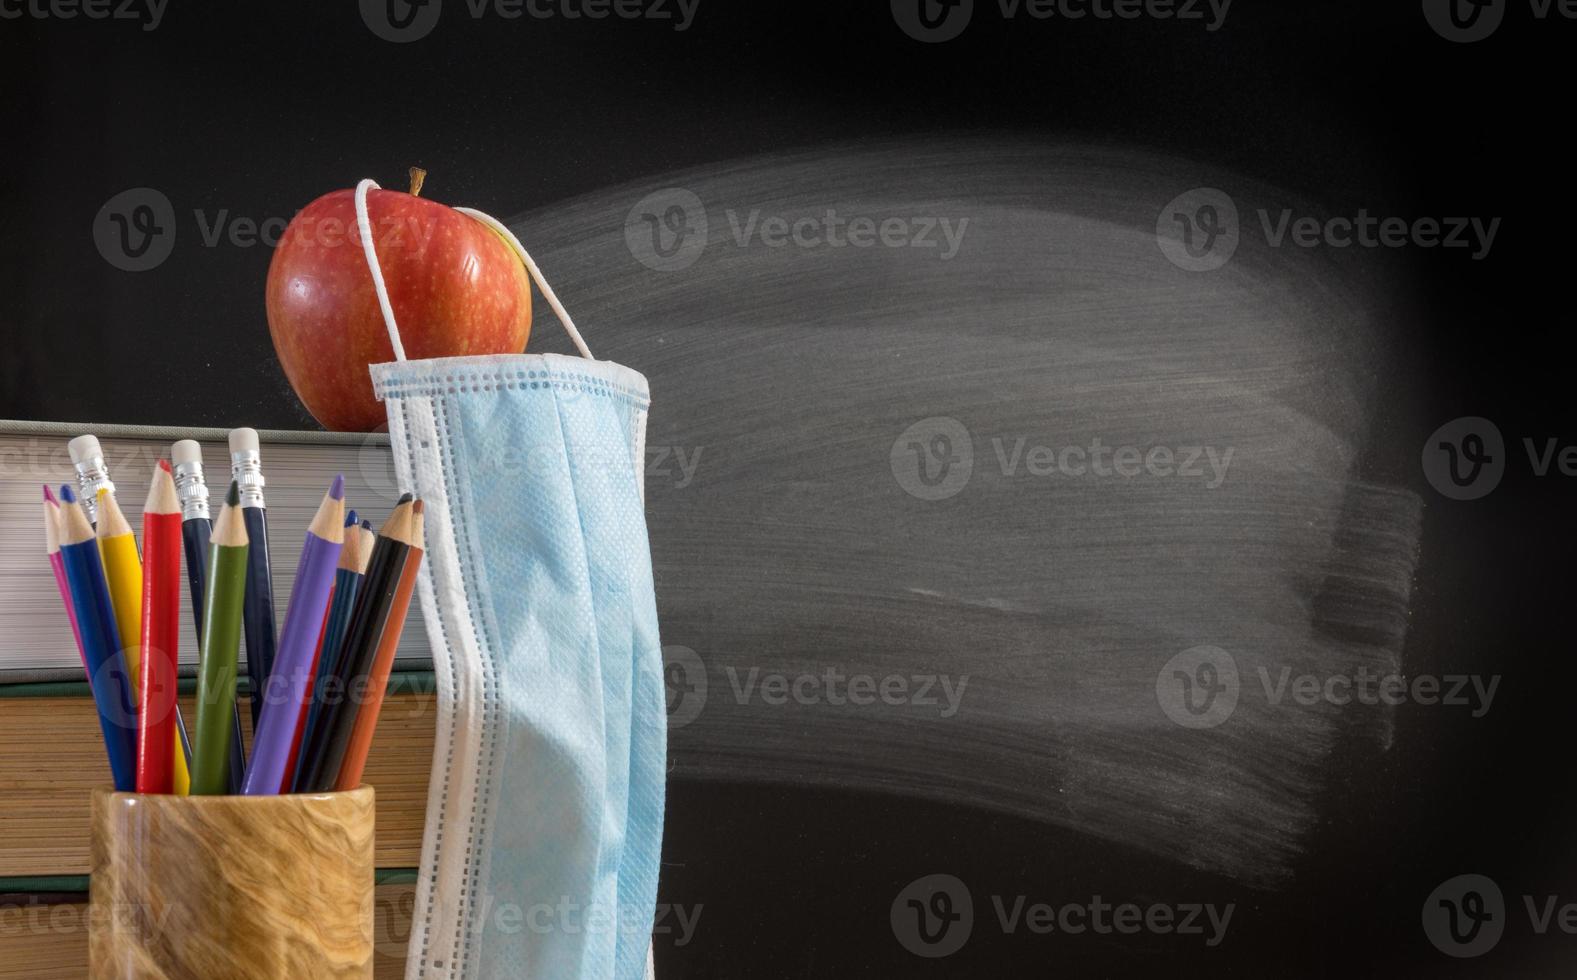 torna al concetto di sfondo della scuola virtuale con una pila di libri, matita, mela con maschera facciale foto